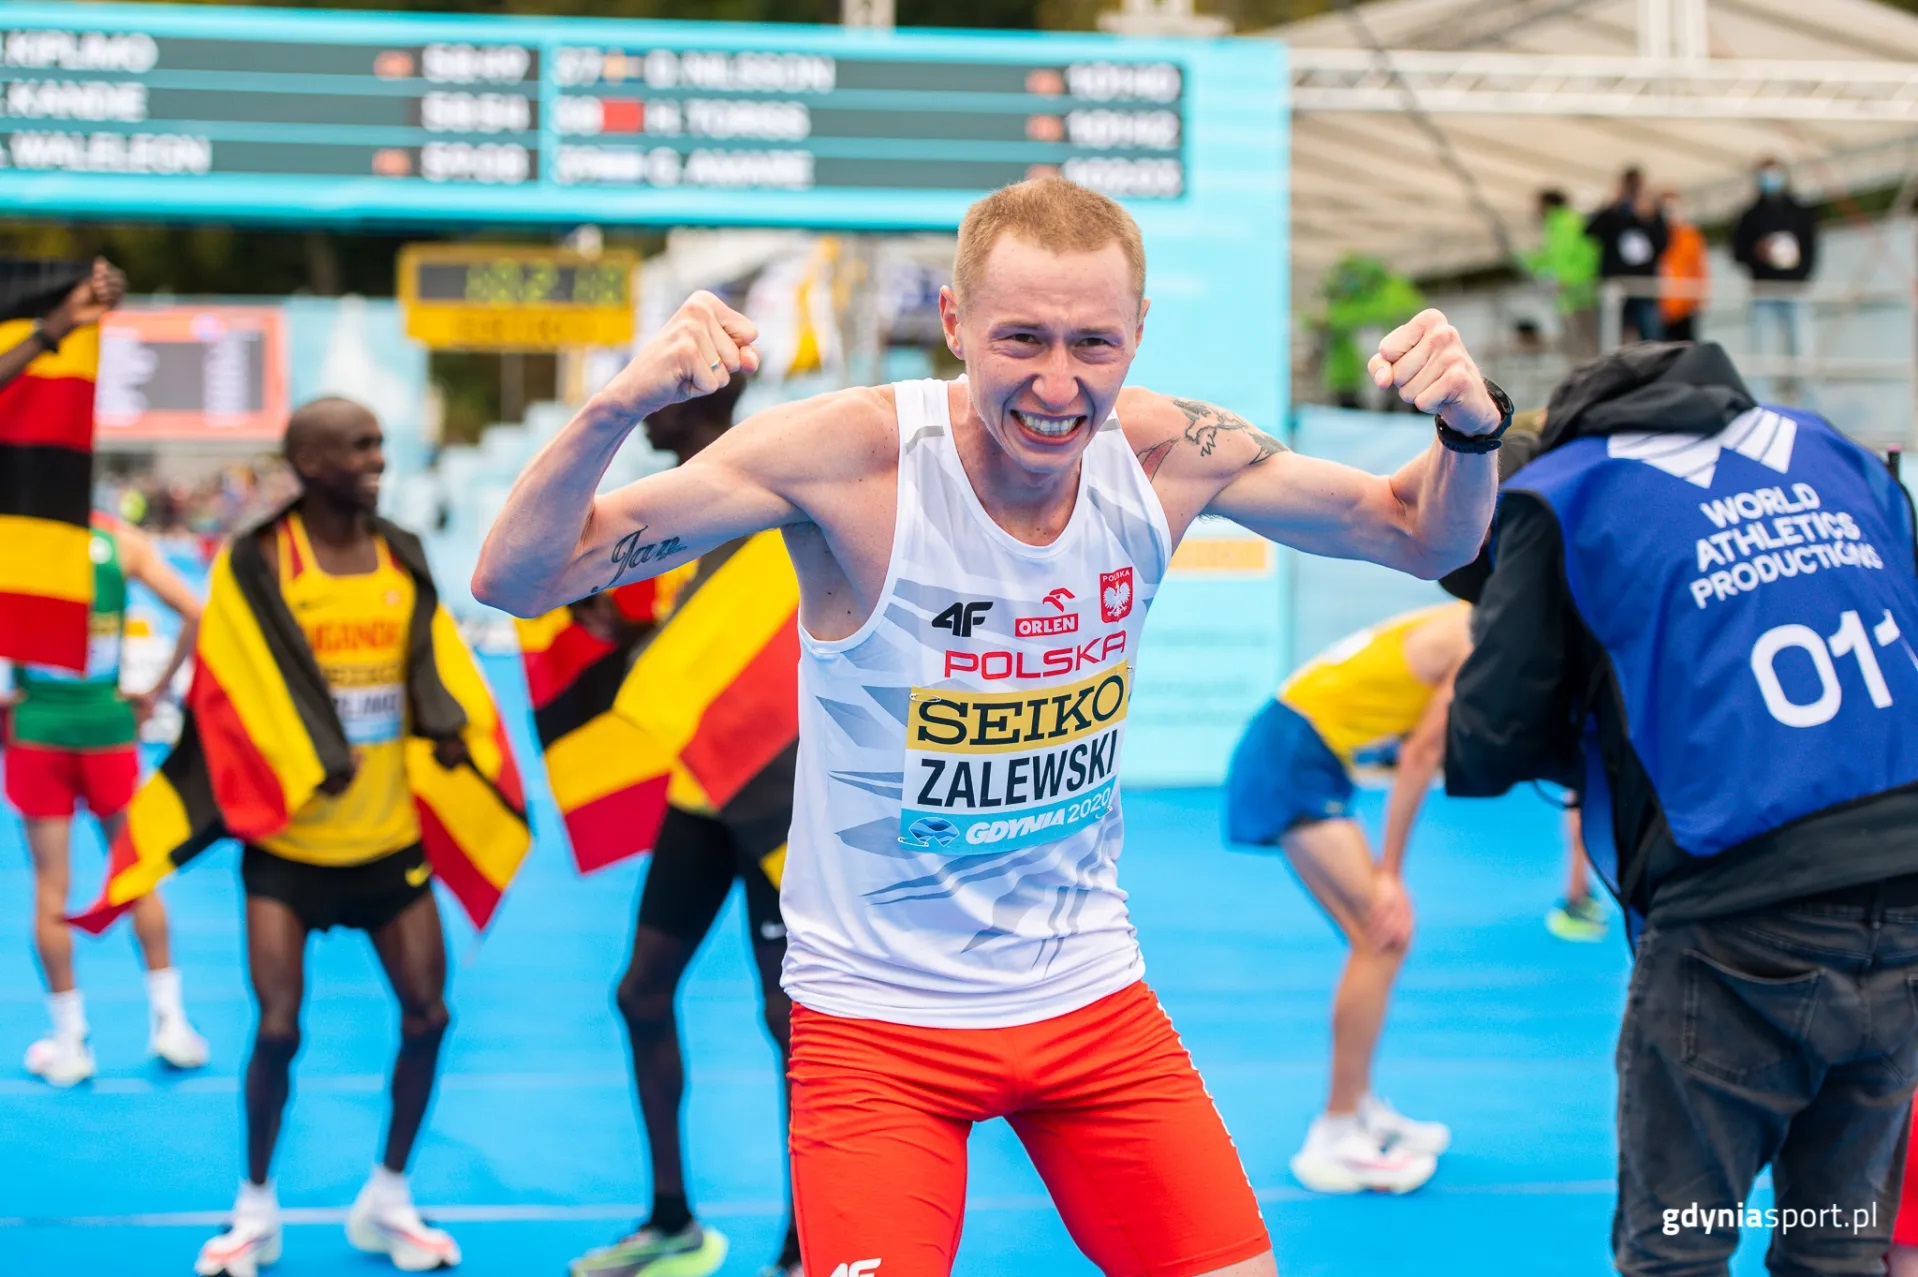 Nowy rekordzista Polski w półmaratonie Krystian Zalewski